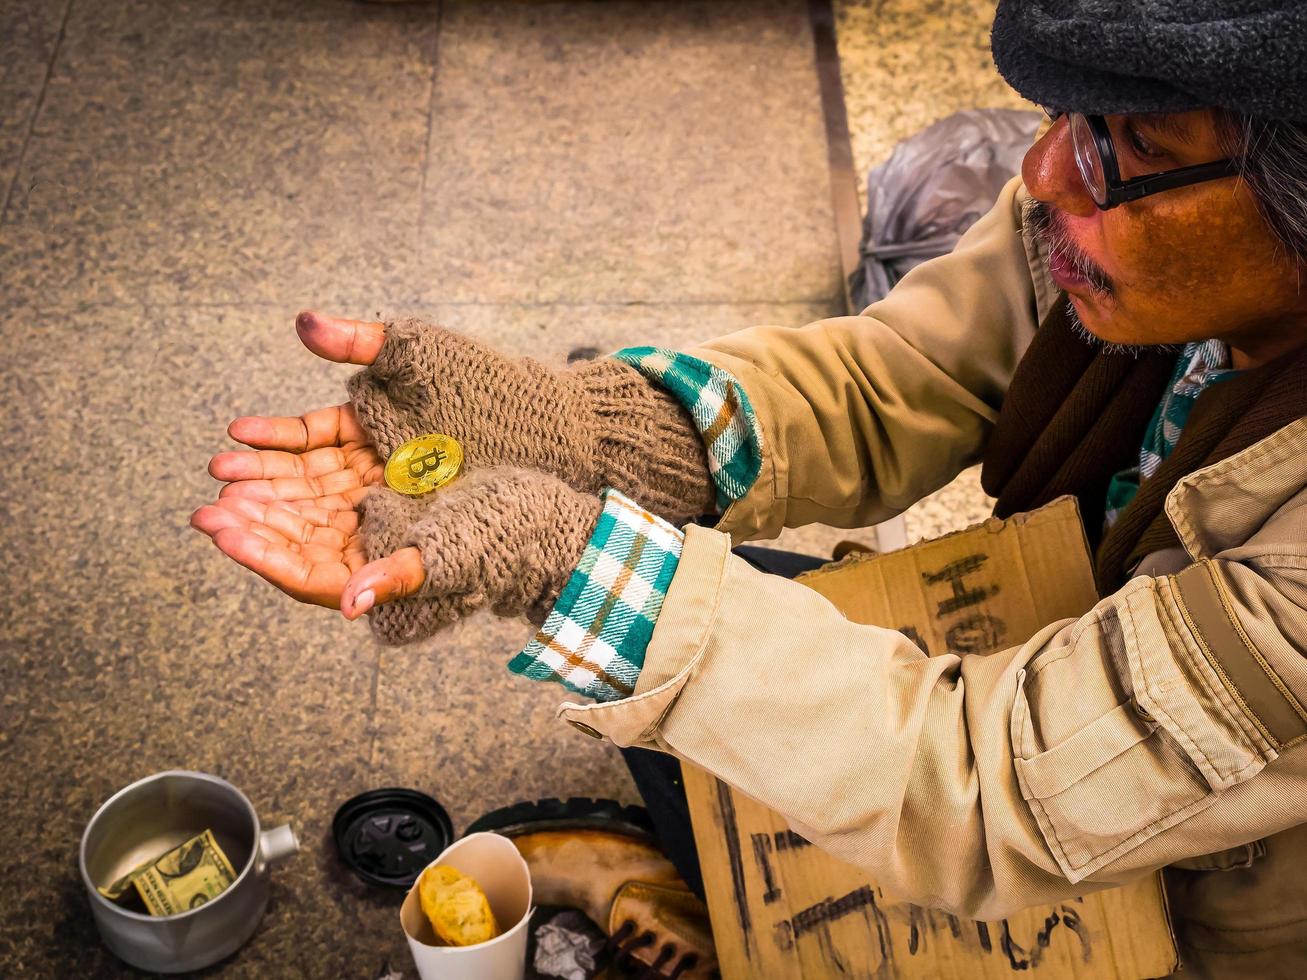 un pobre vagabundo se sorprende al recibir donaciones como bitcoin foto